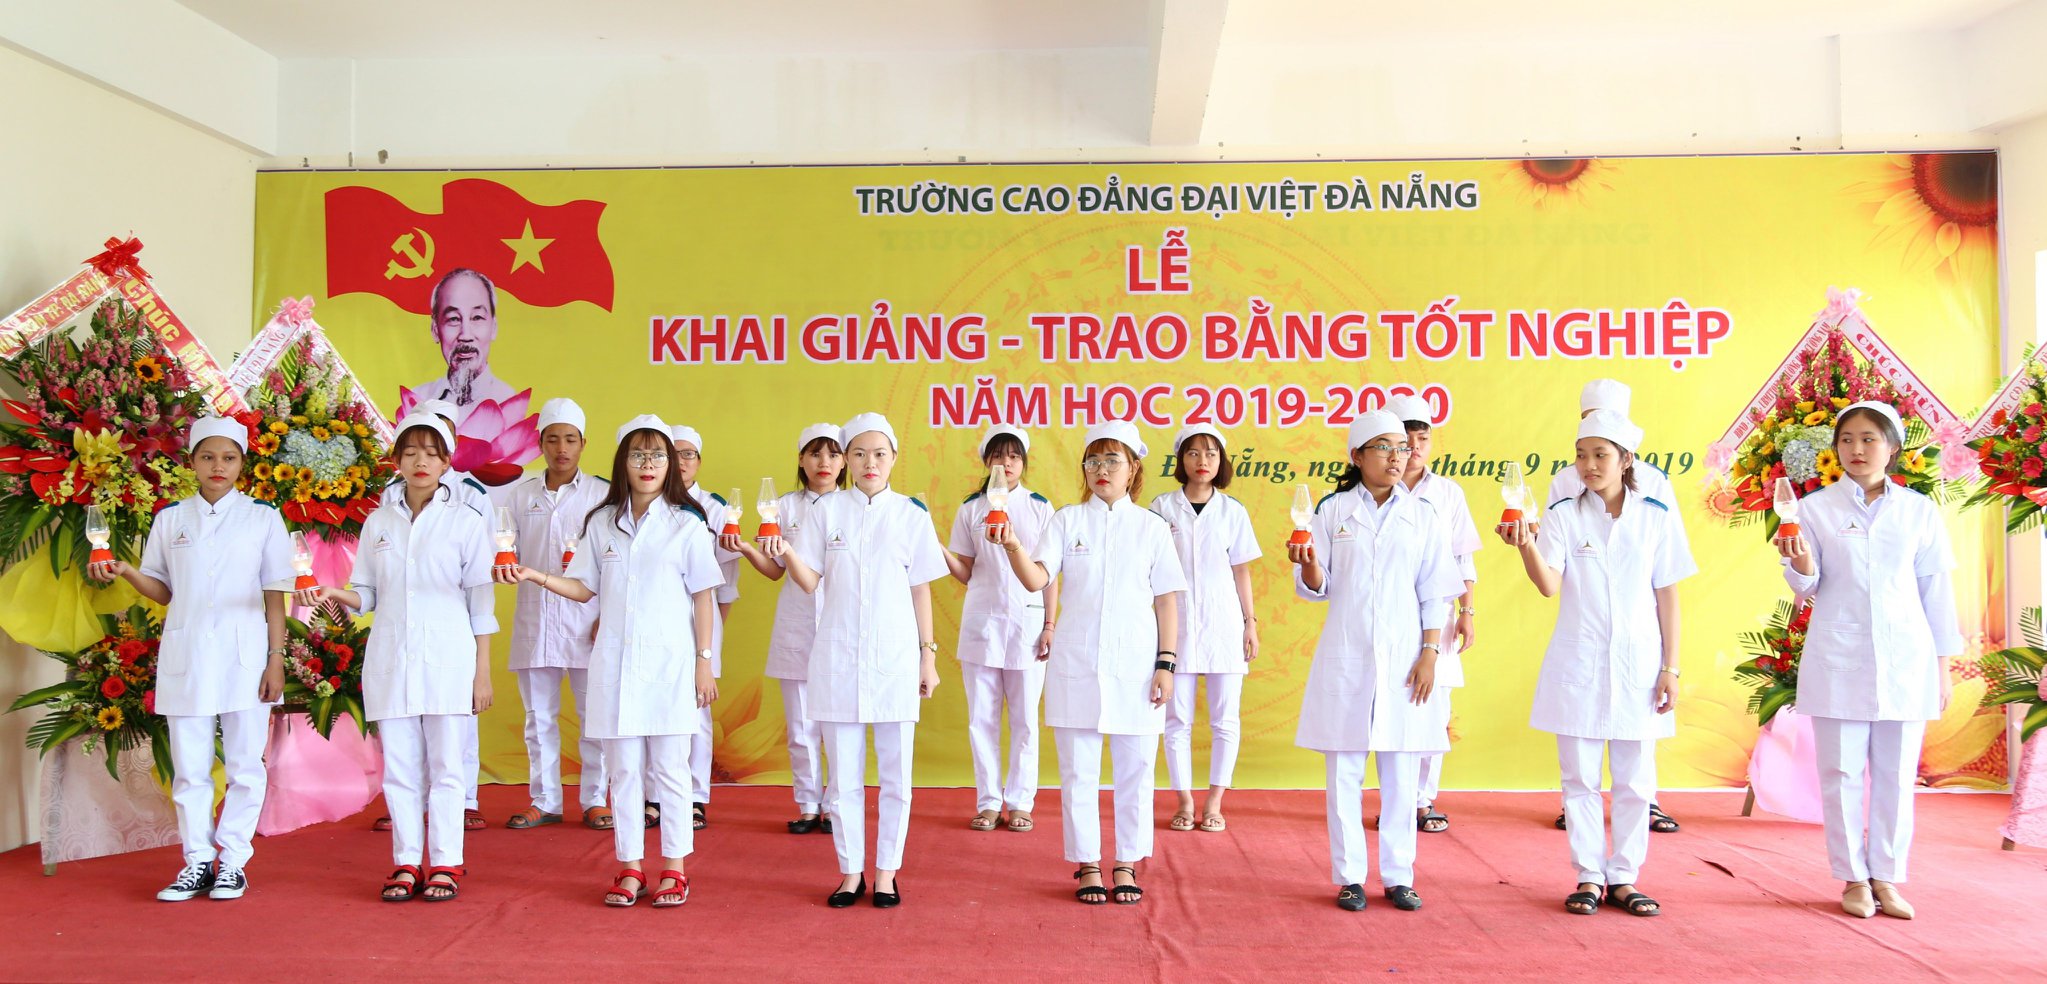 Cao đẳng Đại Việt Đà Nẵng ảnh 1